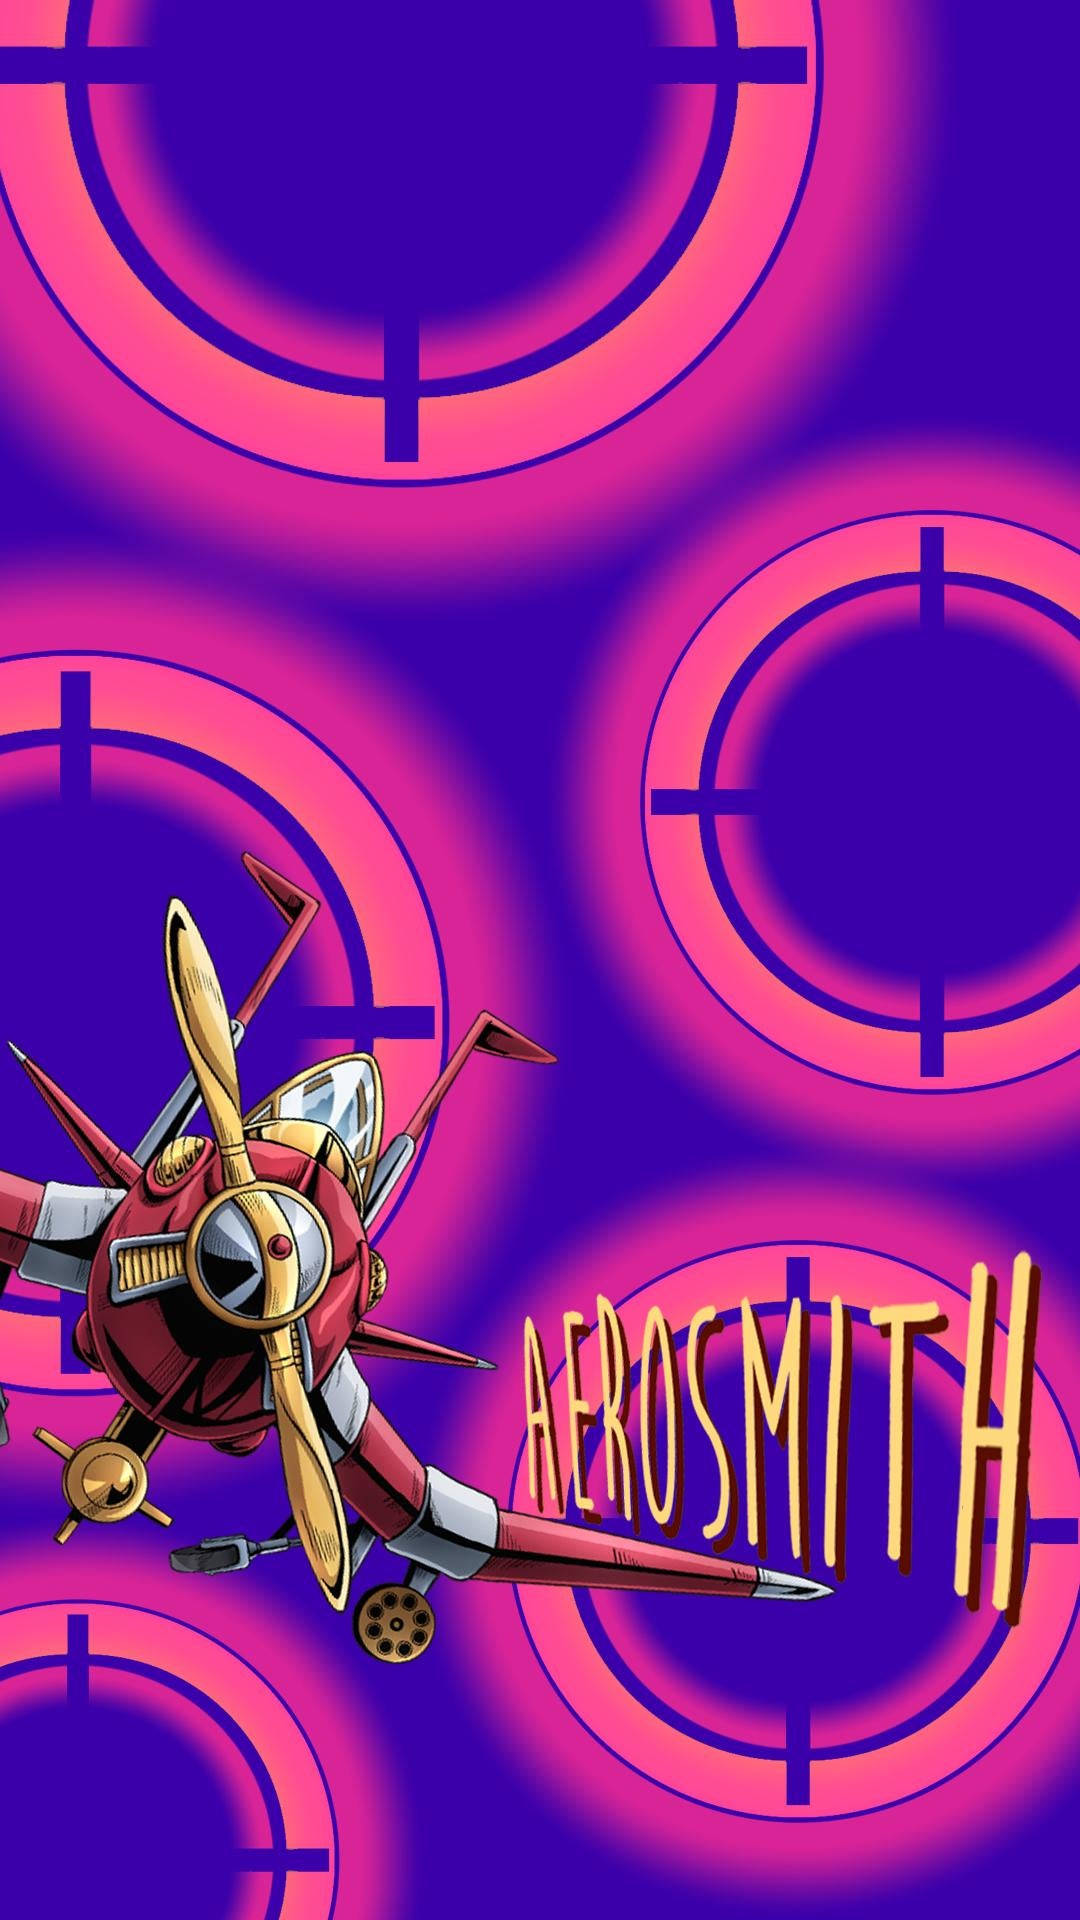 Aerosmith Rock Band Fan Art Tapet. Wallpaper